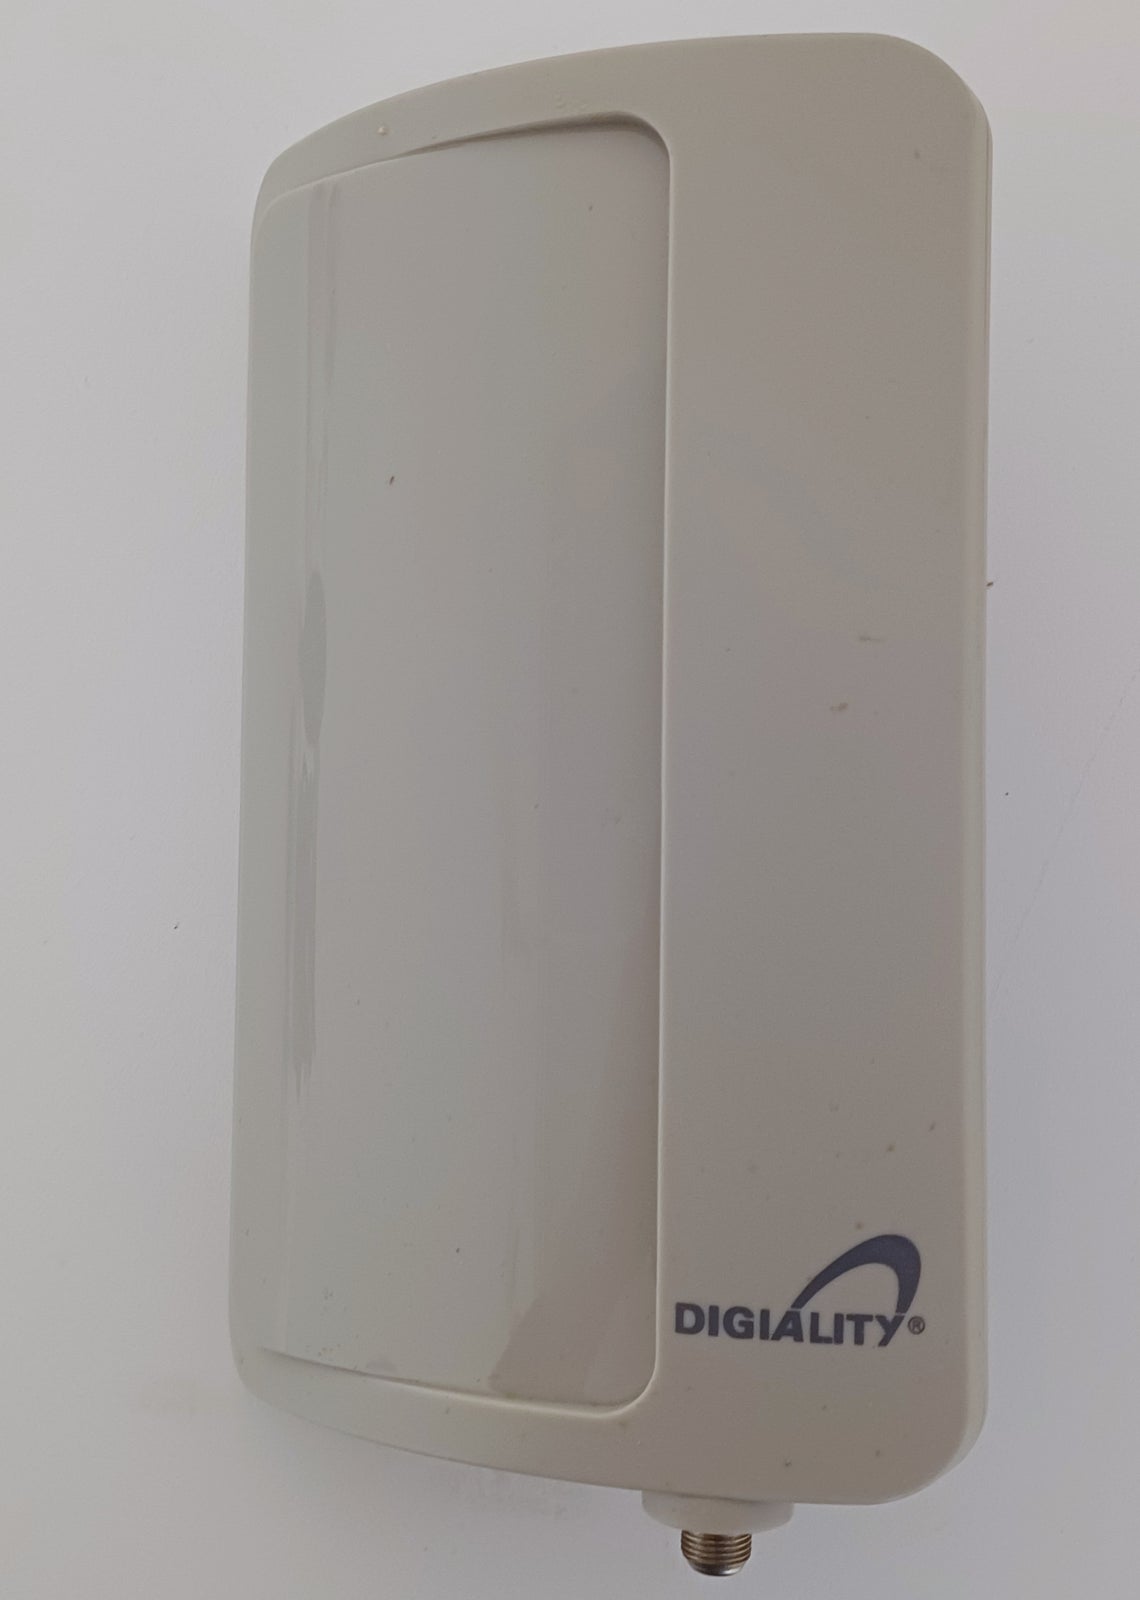 Digital udendørs antenne, Digiality, DA 6000